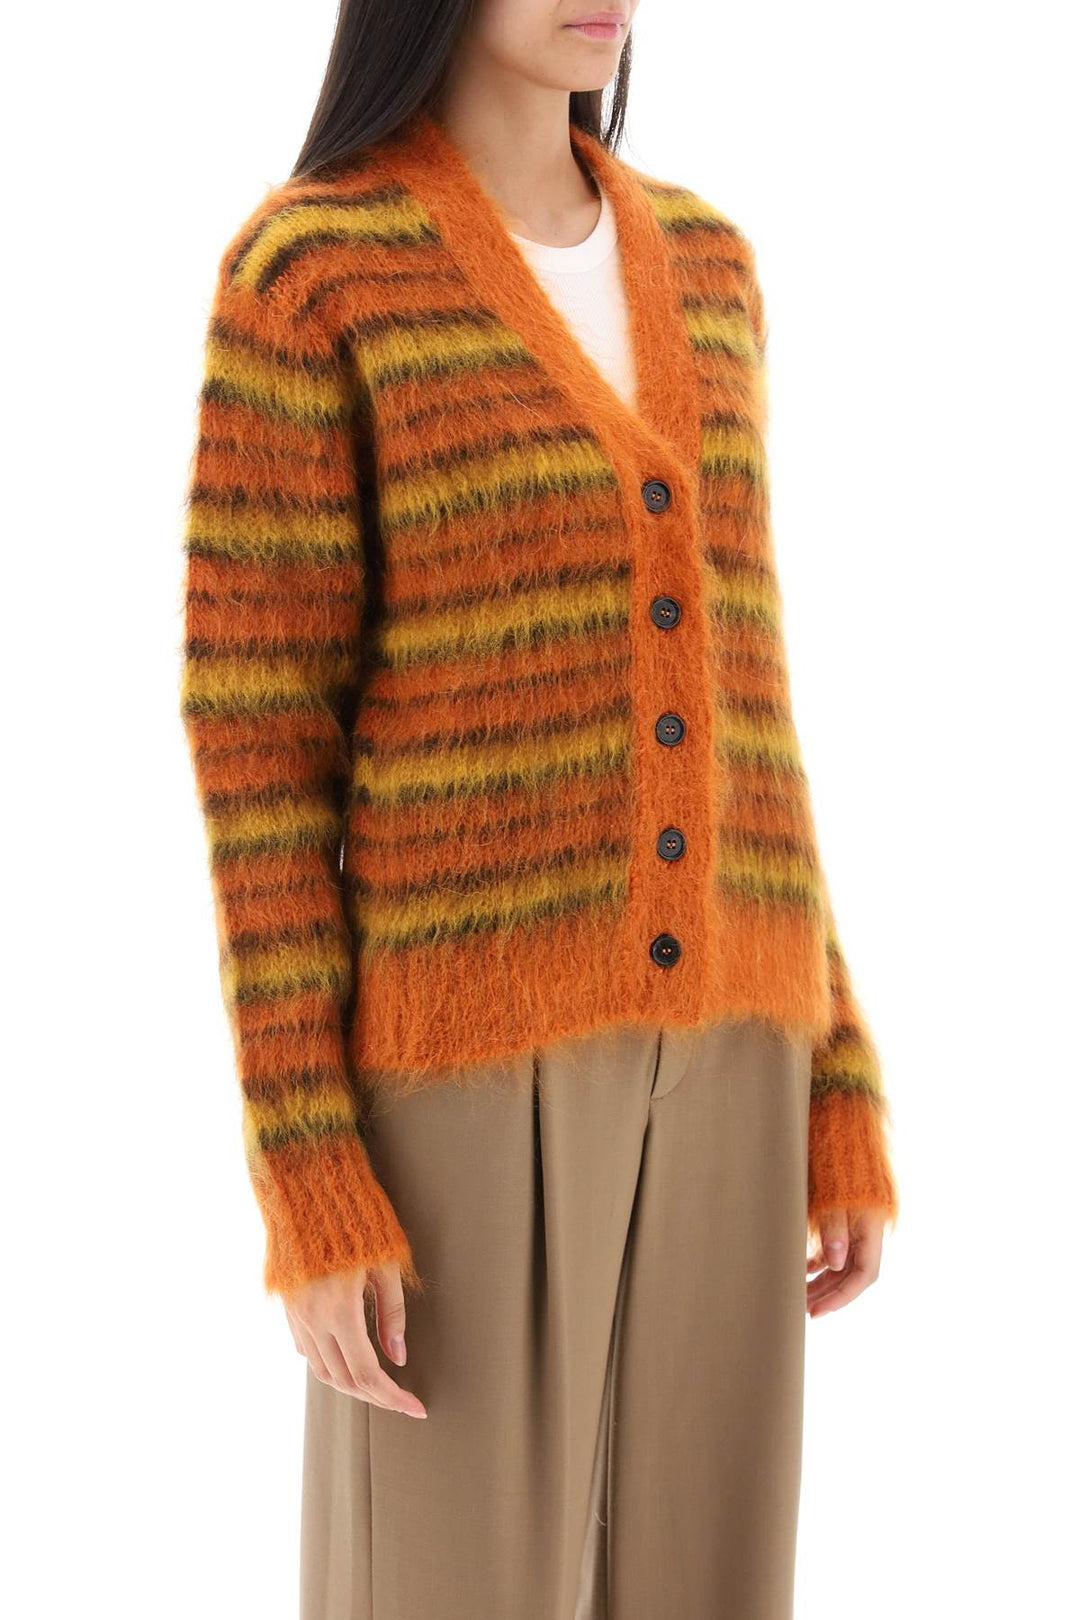 Marni Cardigan In Striped Brushed Mohair   Arancio